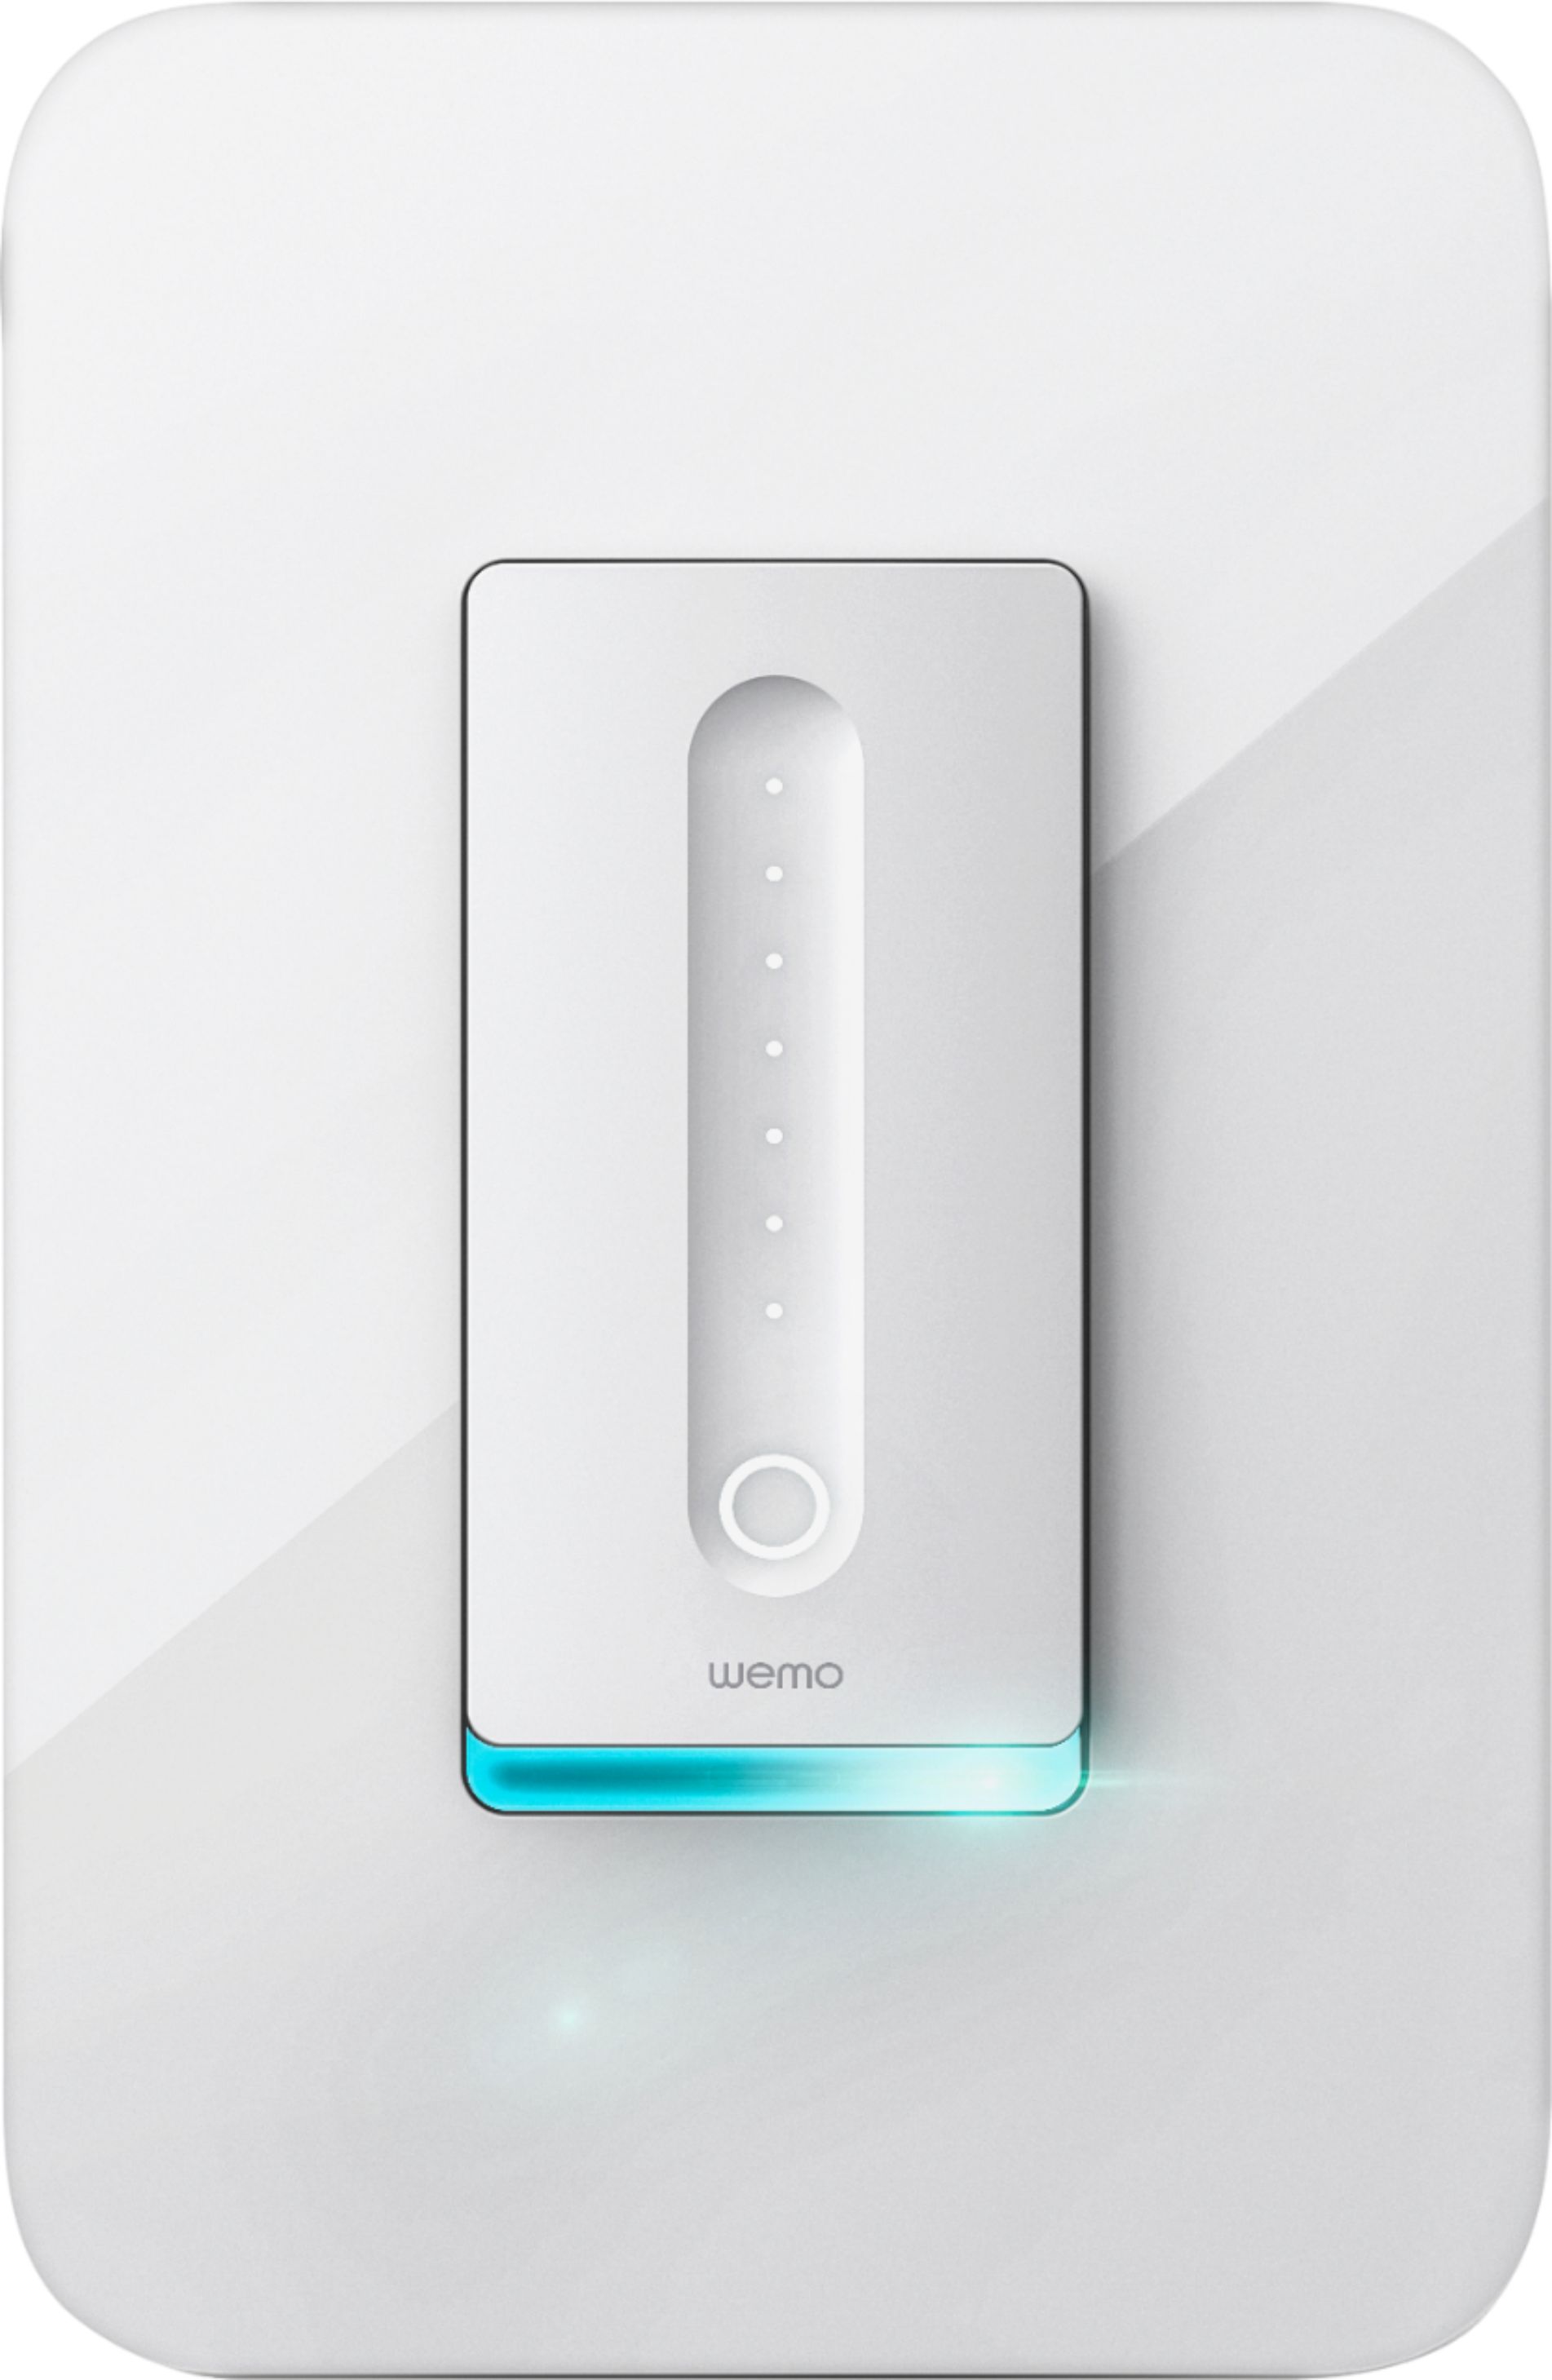 Wemo Wireless Dimmer Switch White